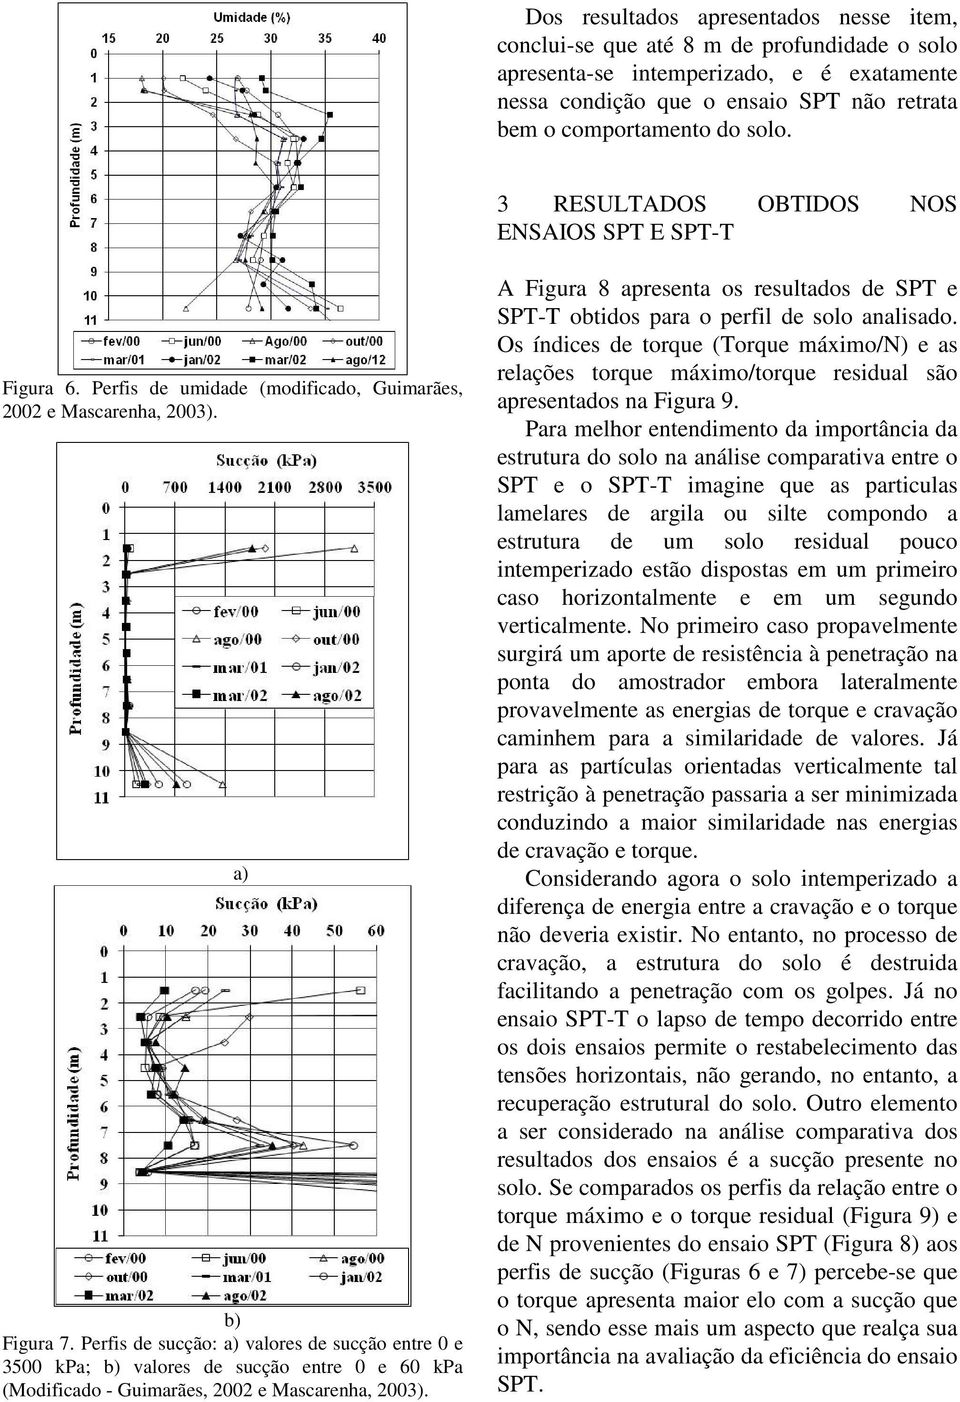 Perfis de sucção: a) valores de sucção entre 0 e 3500 kpa; b) valores de sucção entre 0 e 60 kpa (Modificado - Guimarães, 2002 e Mascarenha, 2003).